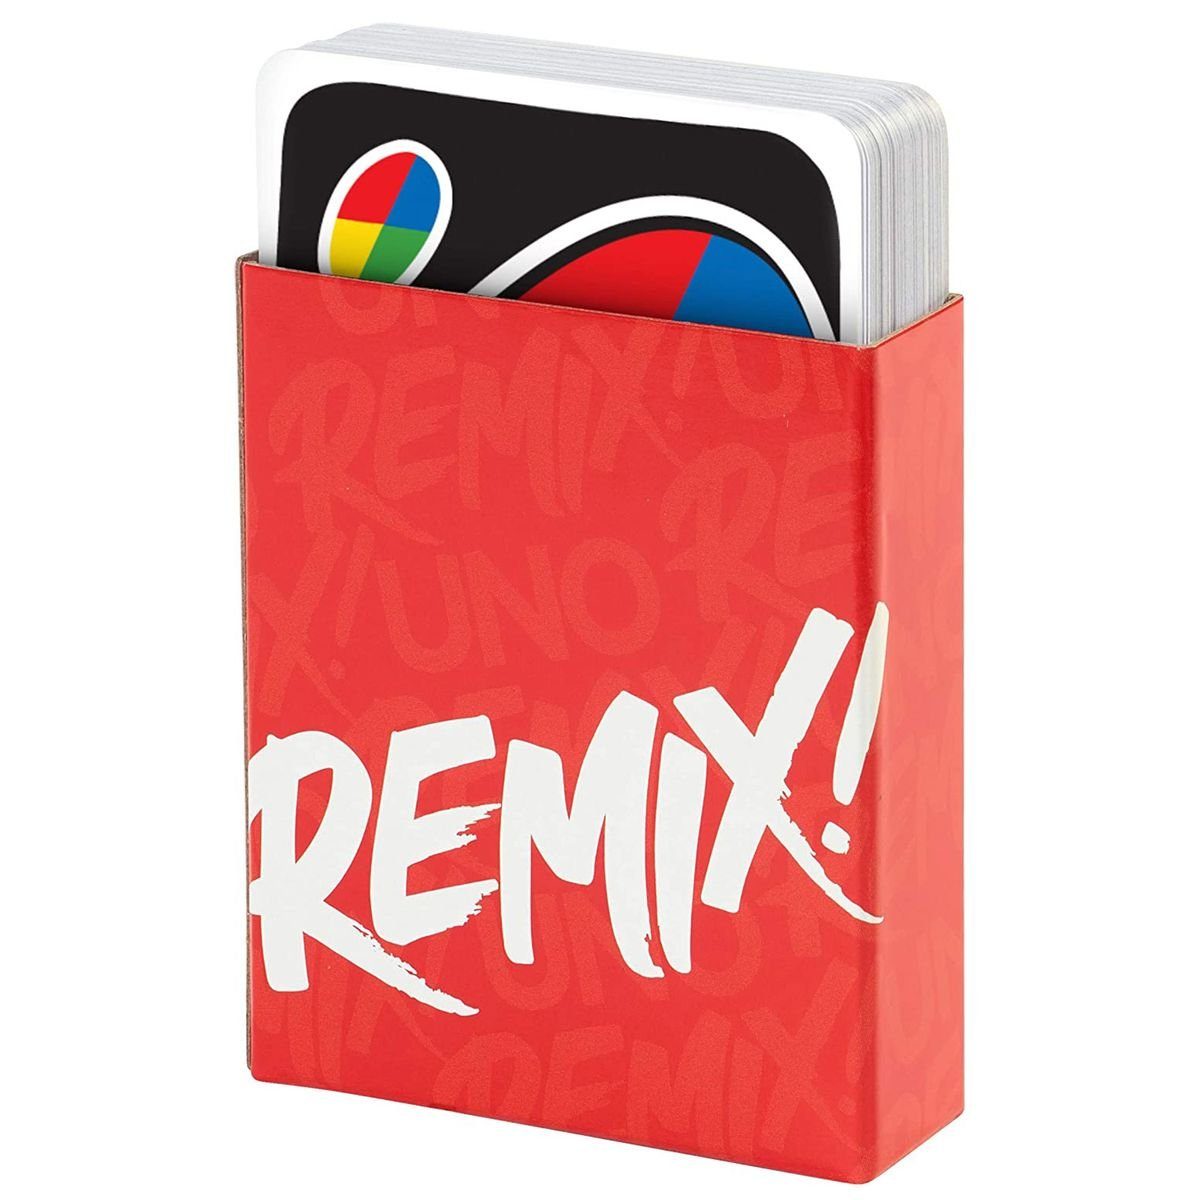 Kartenspiel Mattel Remix, - GXD71 - mit 112 Mattel® UNO Spiel, Karten